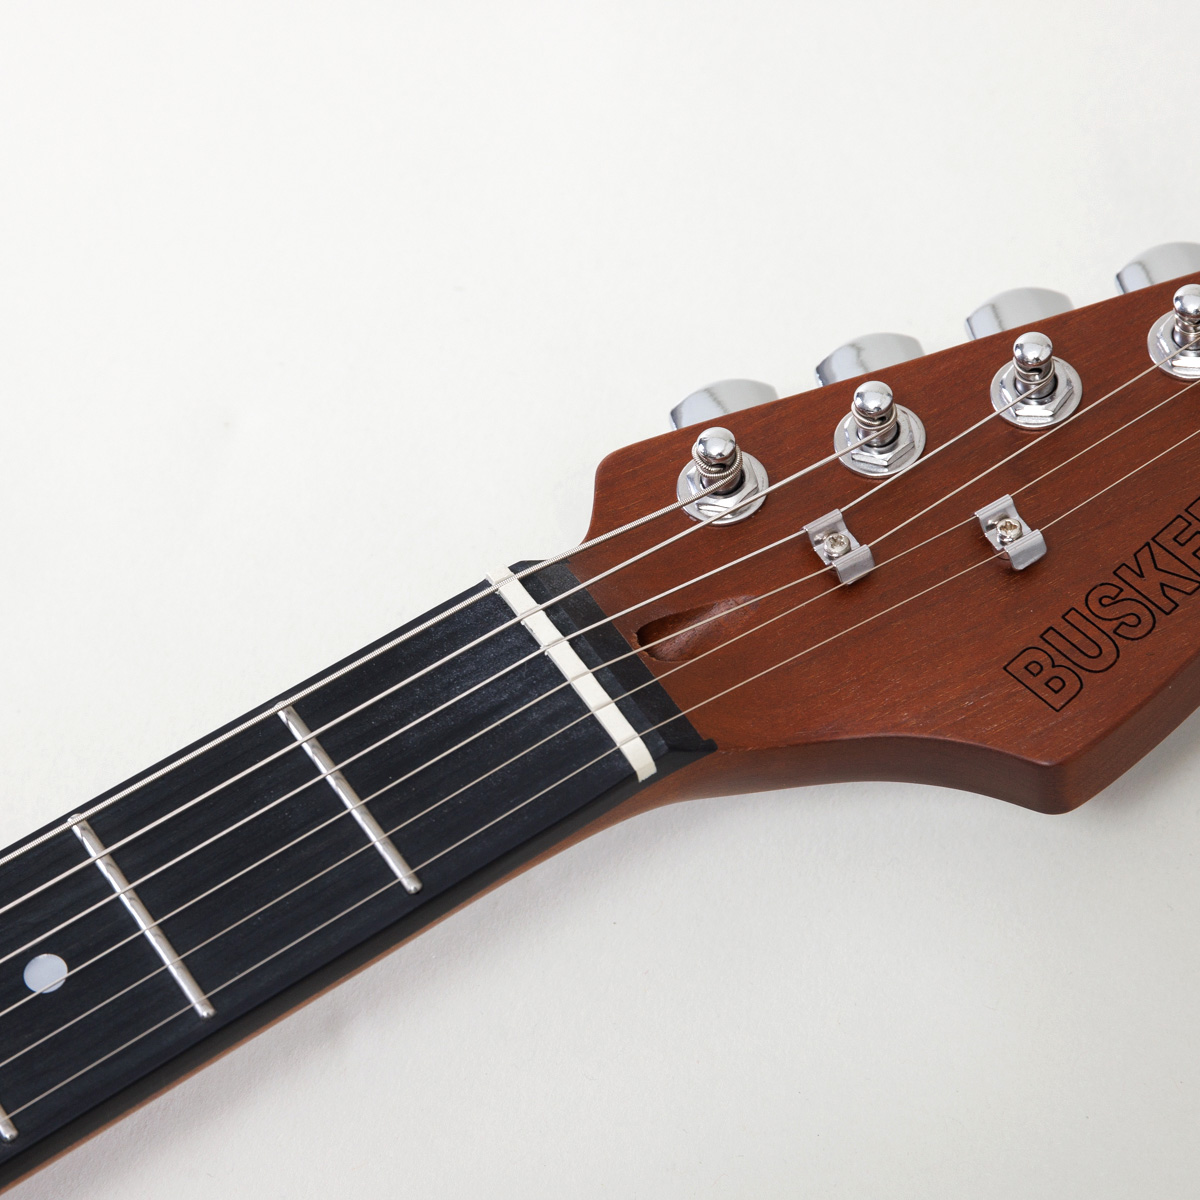 BST-Standard エレキギター初心者12点セット【ミニアンプ付き】ストラトキャスタータイプ ローステッドメイプルネック パステルカラー 関連画像